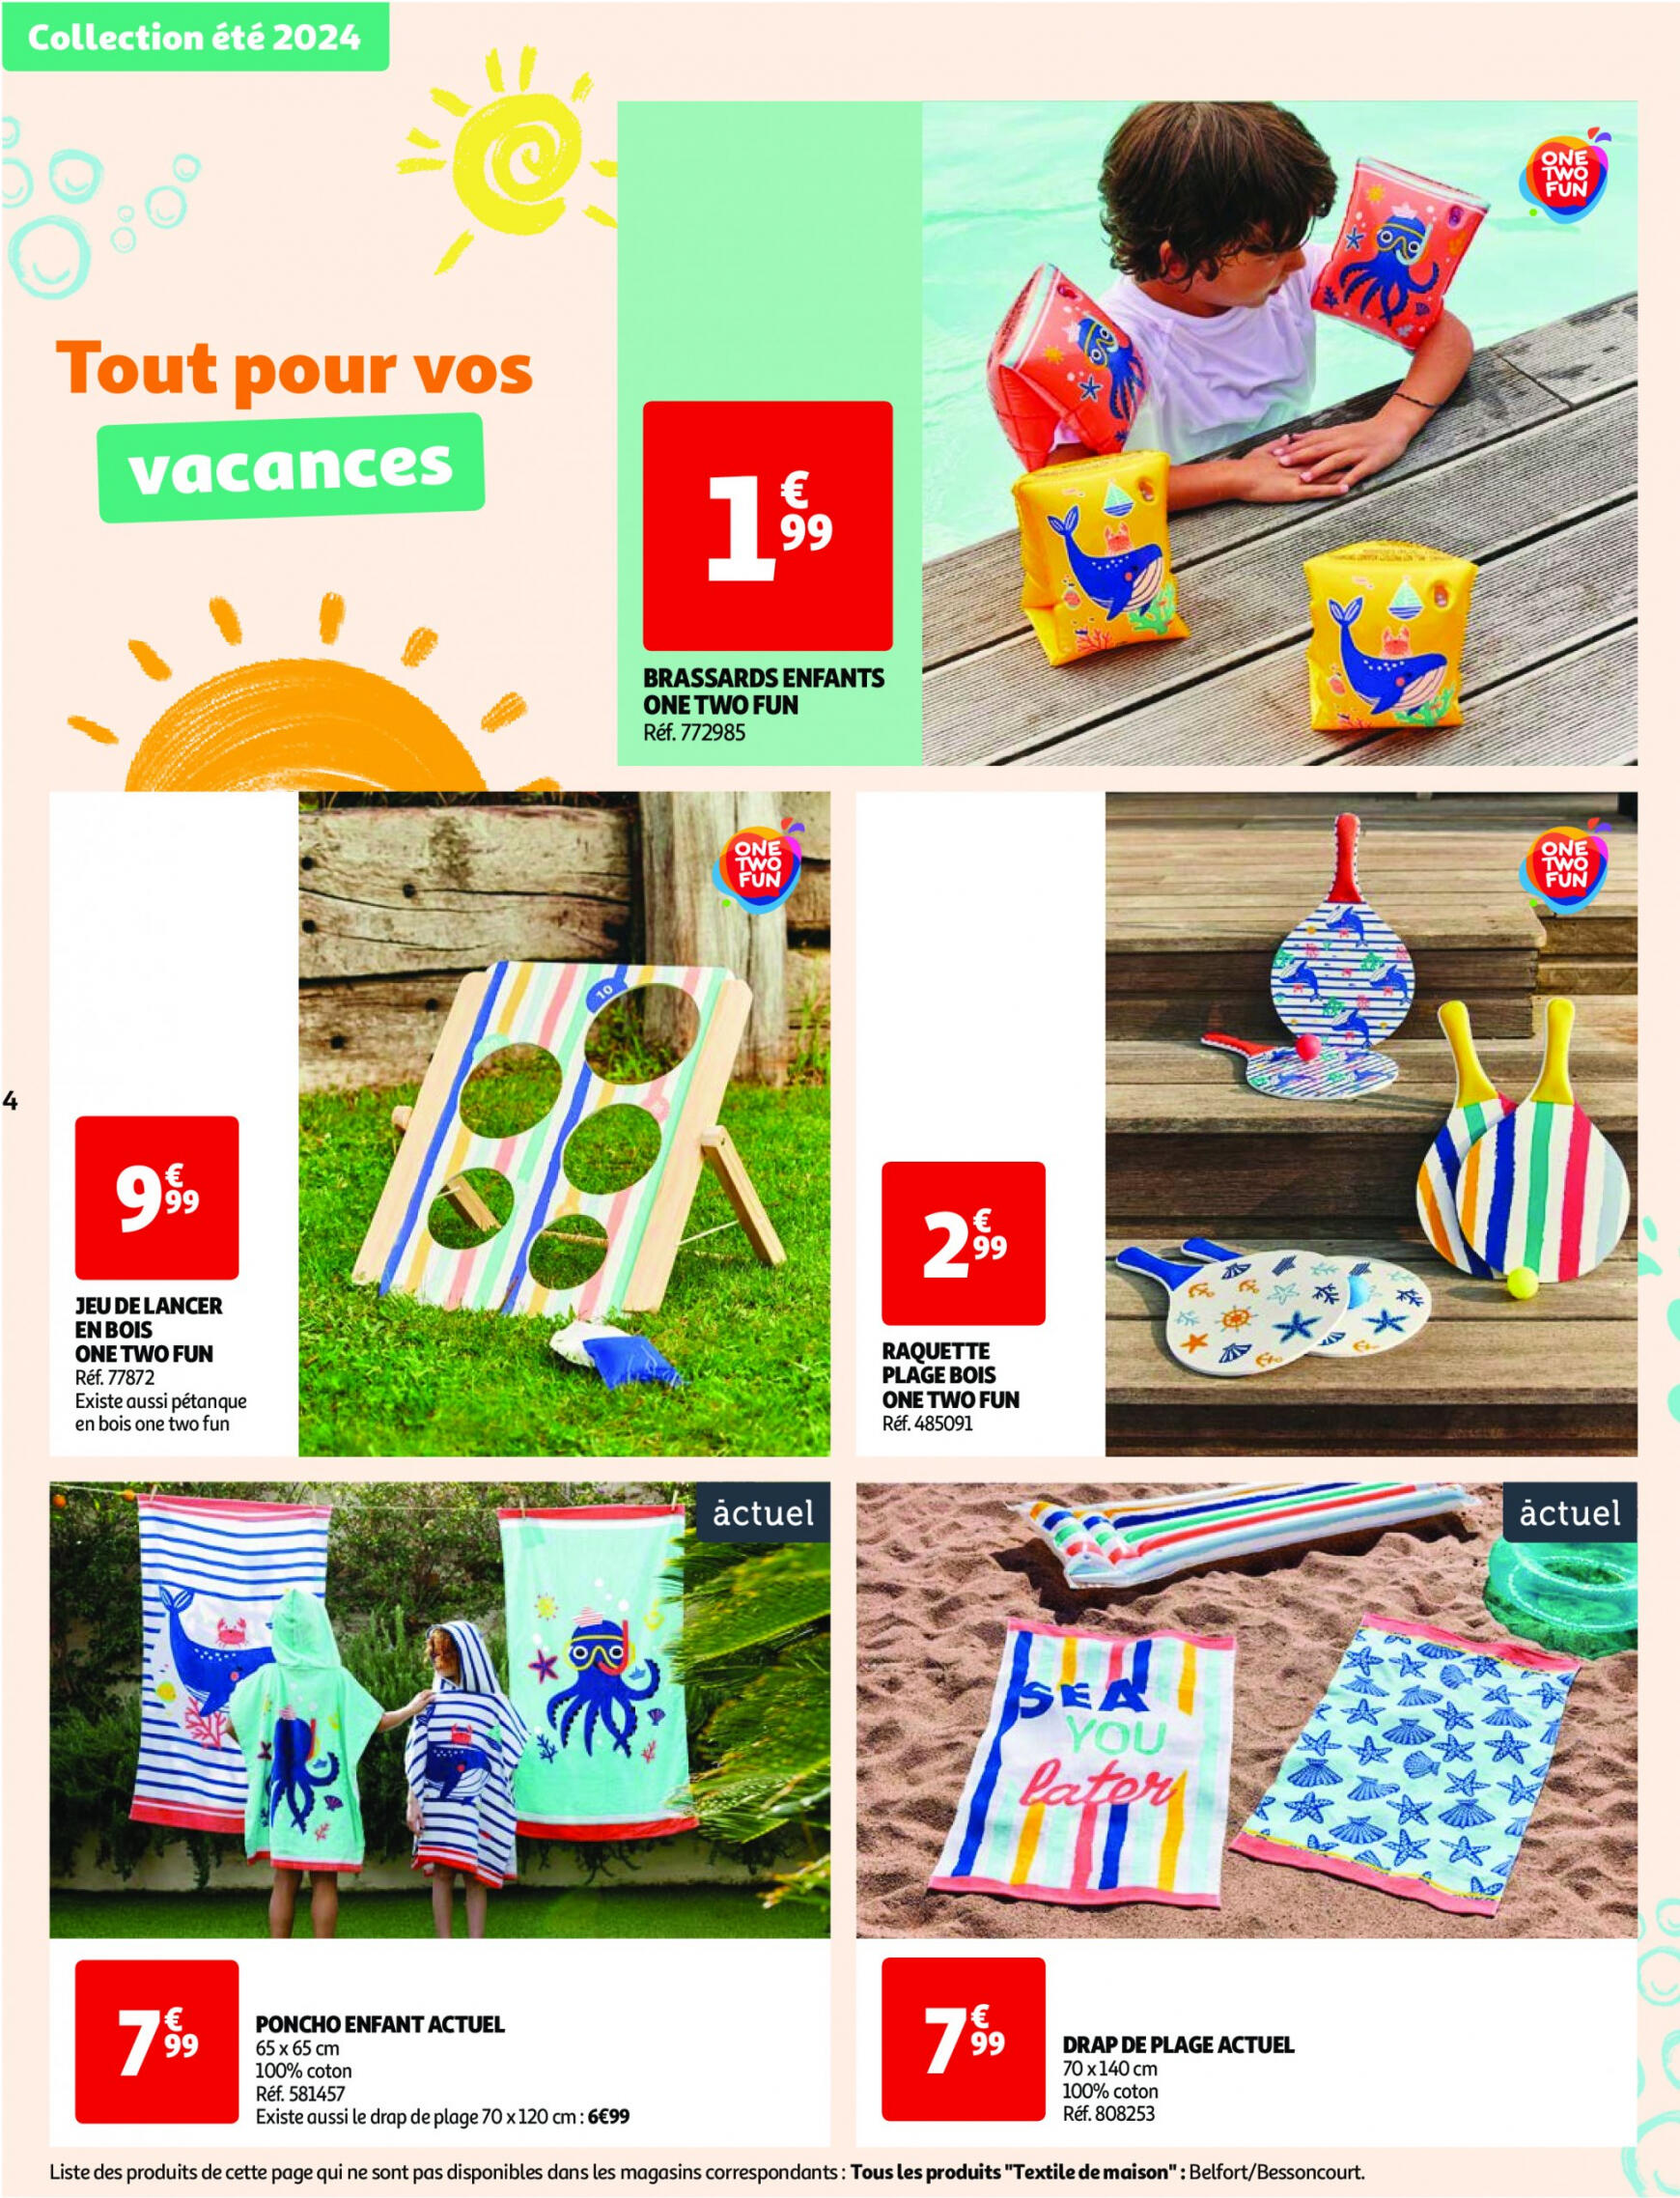 auchan - Auchan - Nos exclusivités Summer pour s'amuser tout l'été folder huidig 14.05. - 15.06. - page: 4